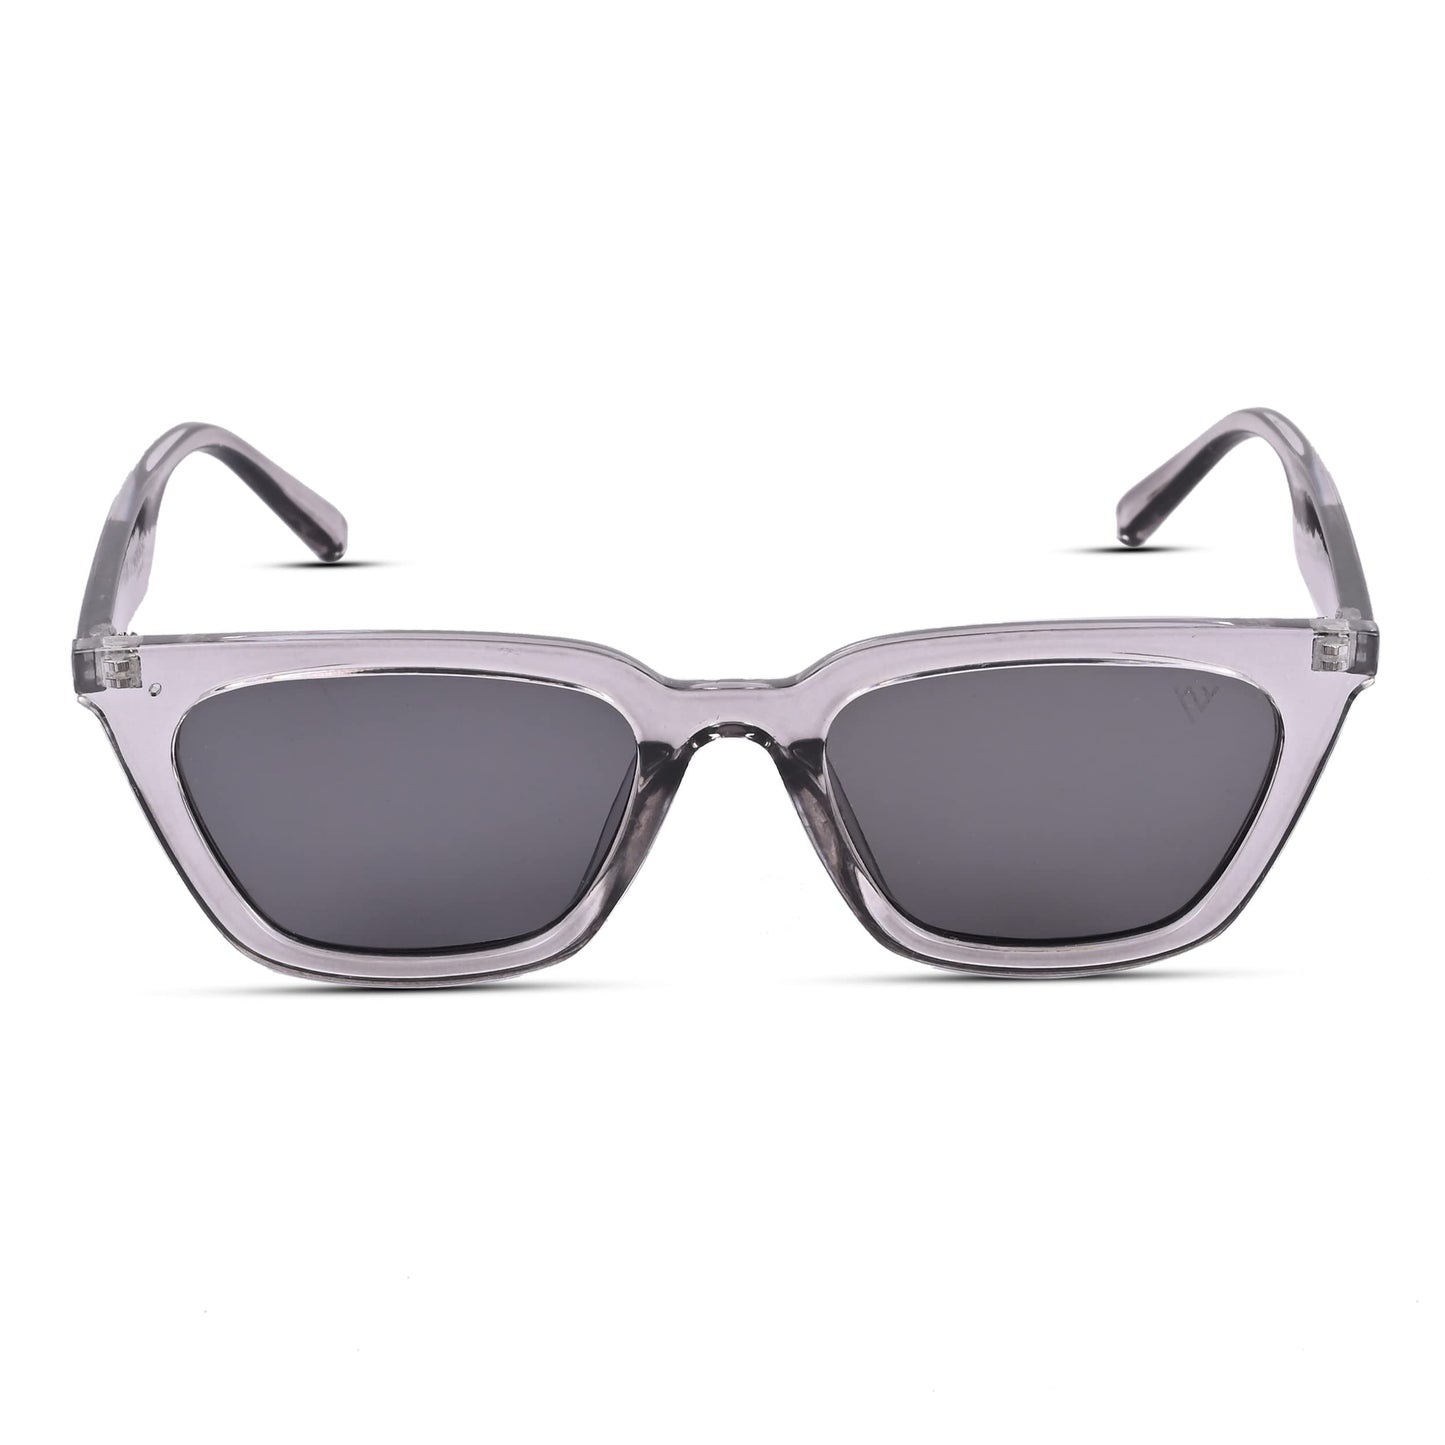 Voyage UV Protection Black Cat-Eye Sunglasses for Women (Grey Frame | Black Lens)